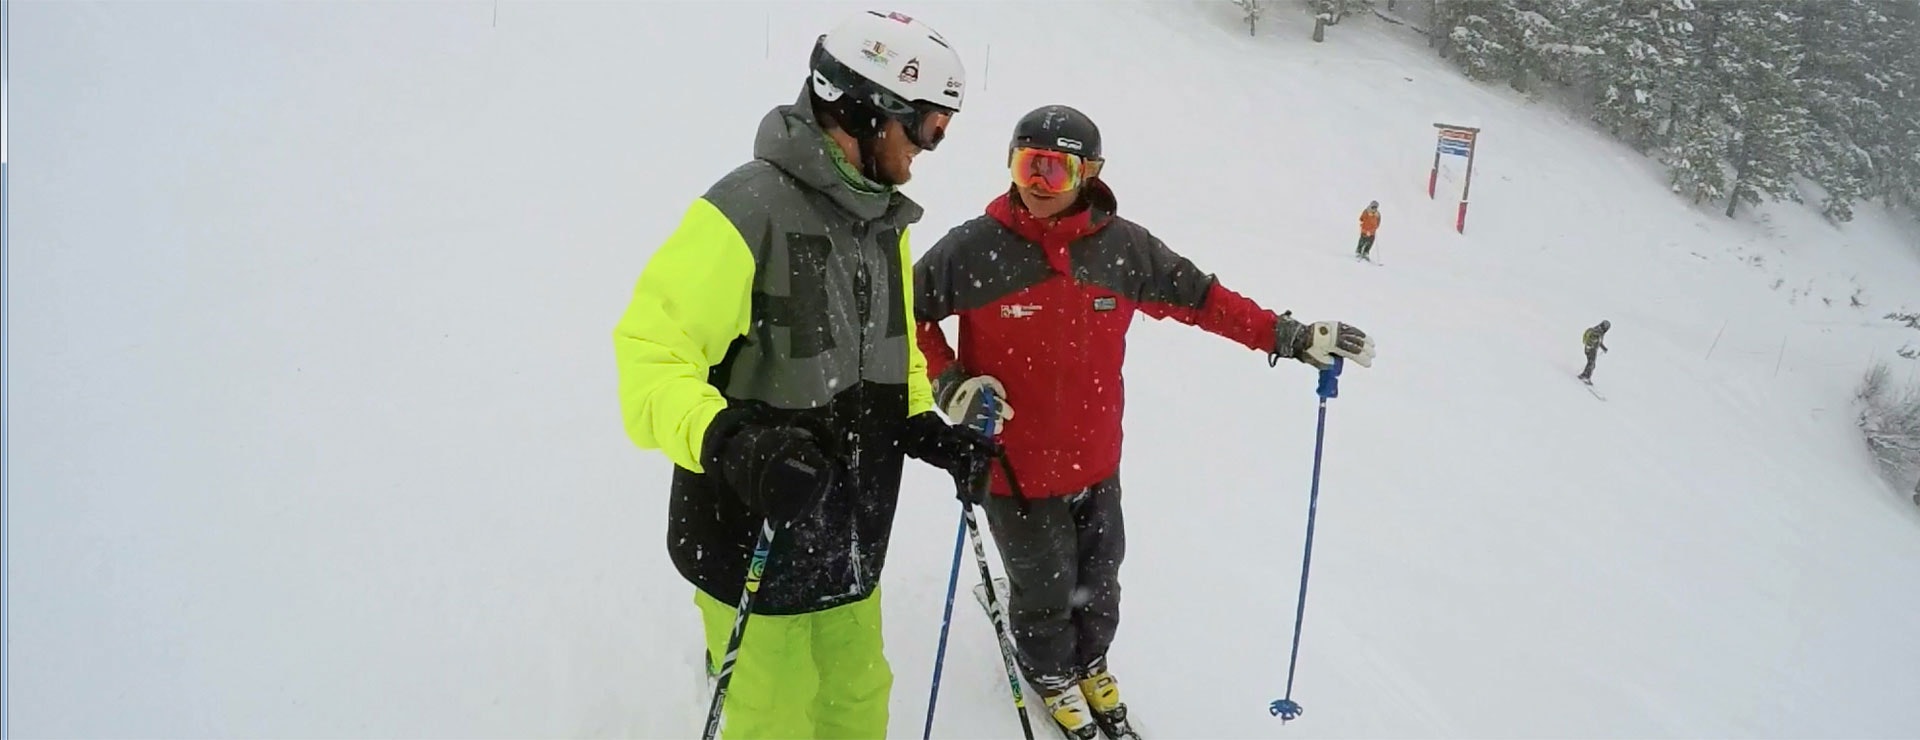 Gary Endecott Skiing